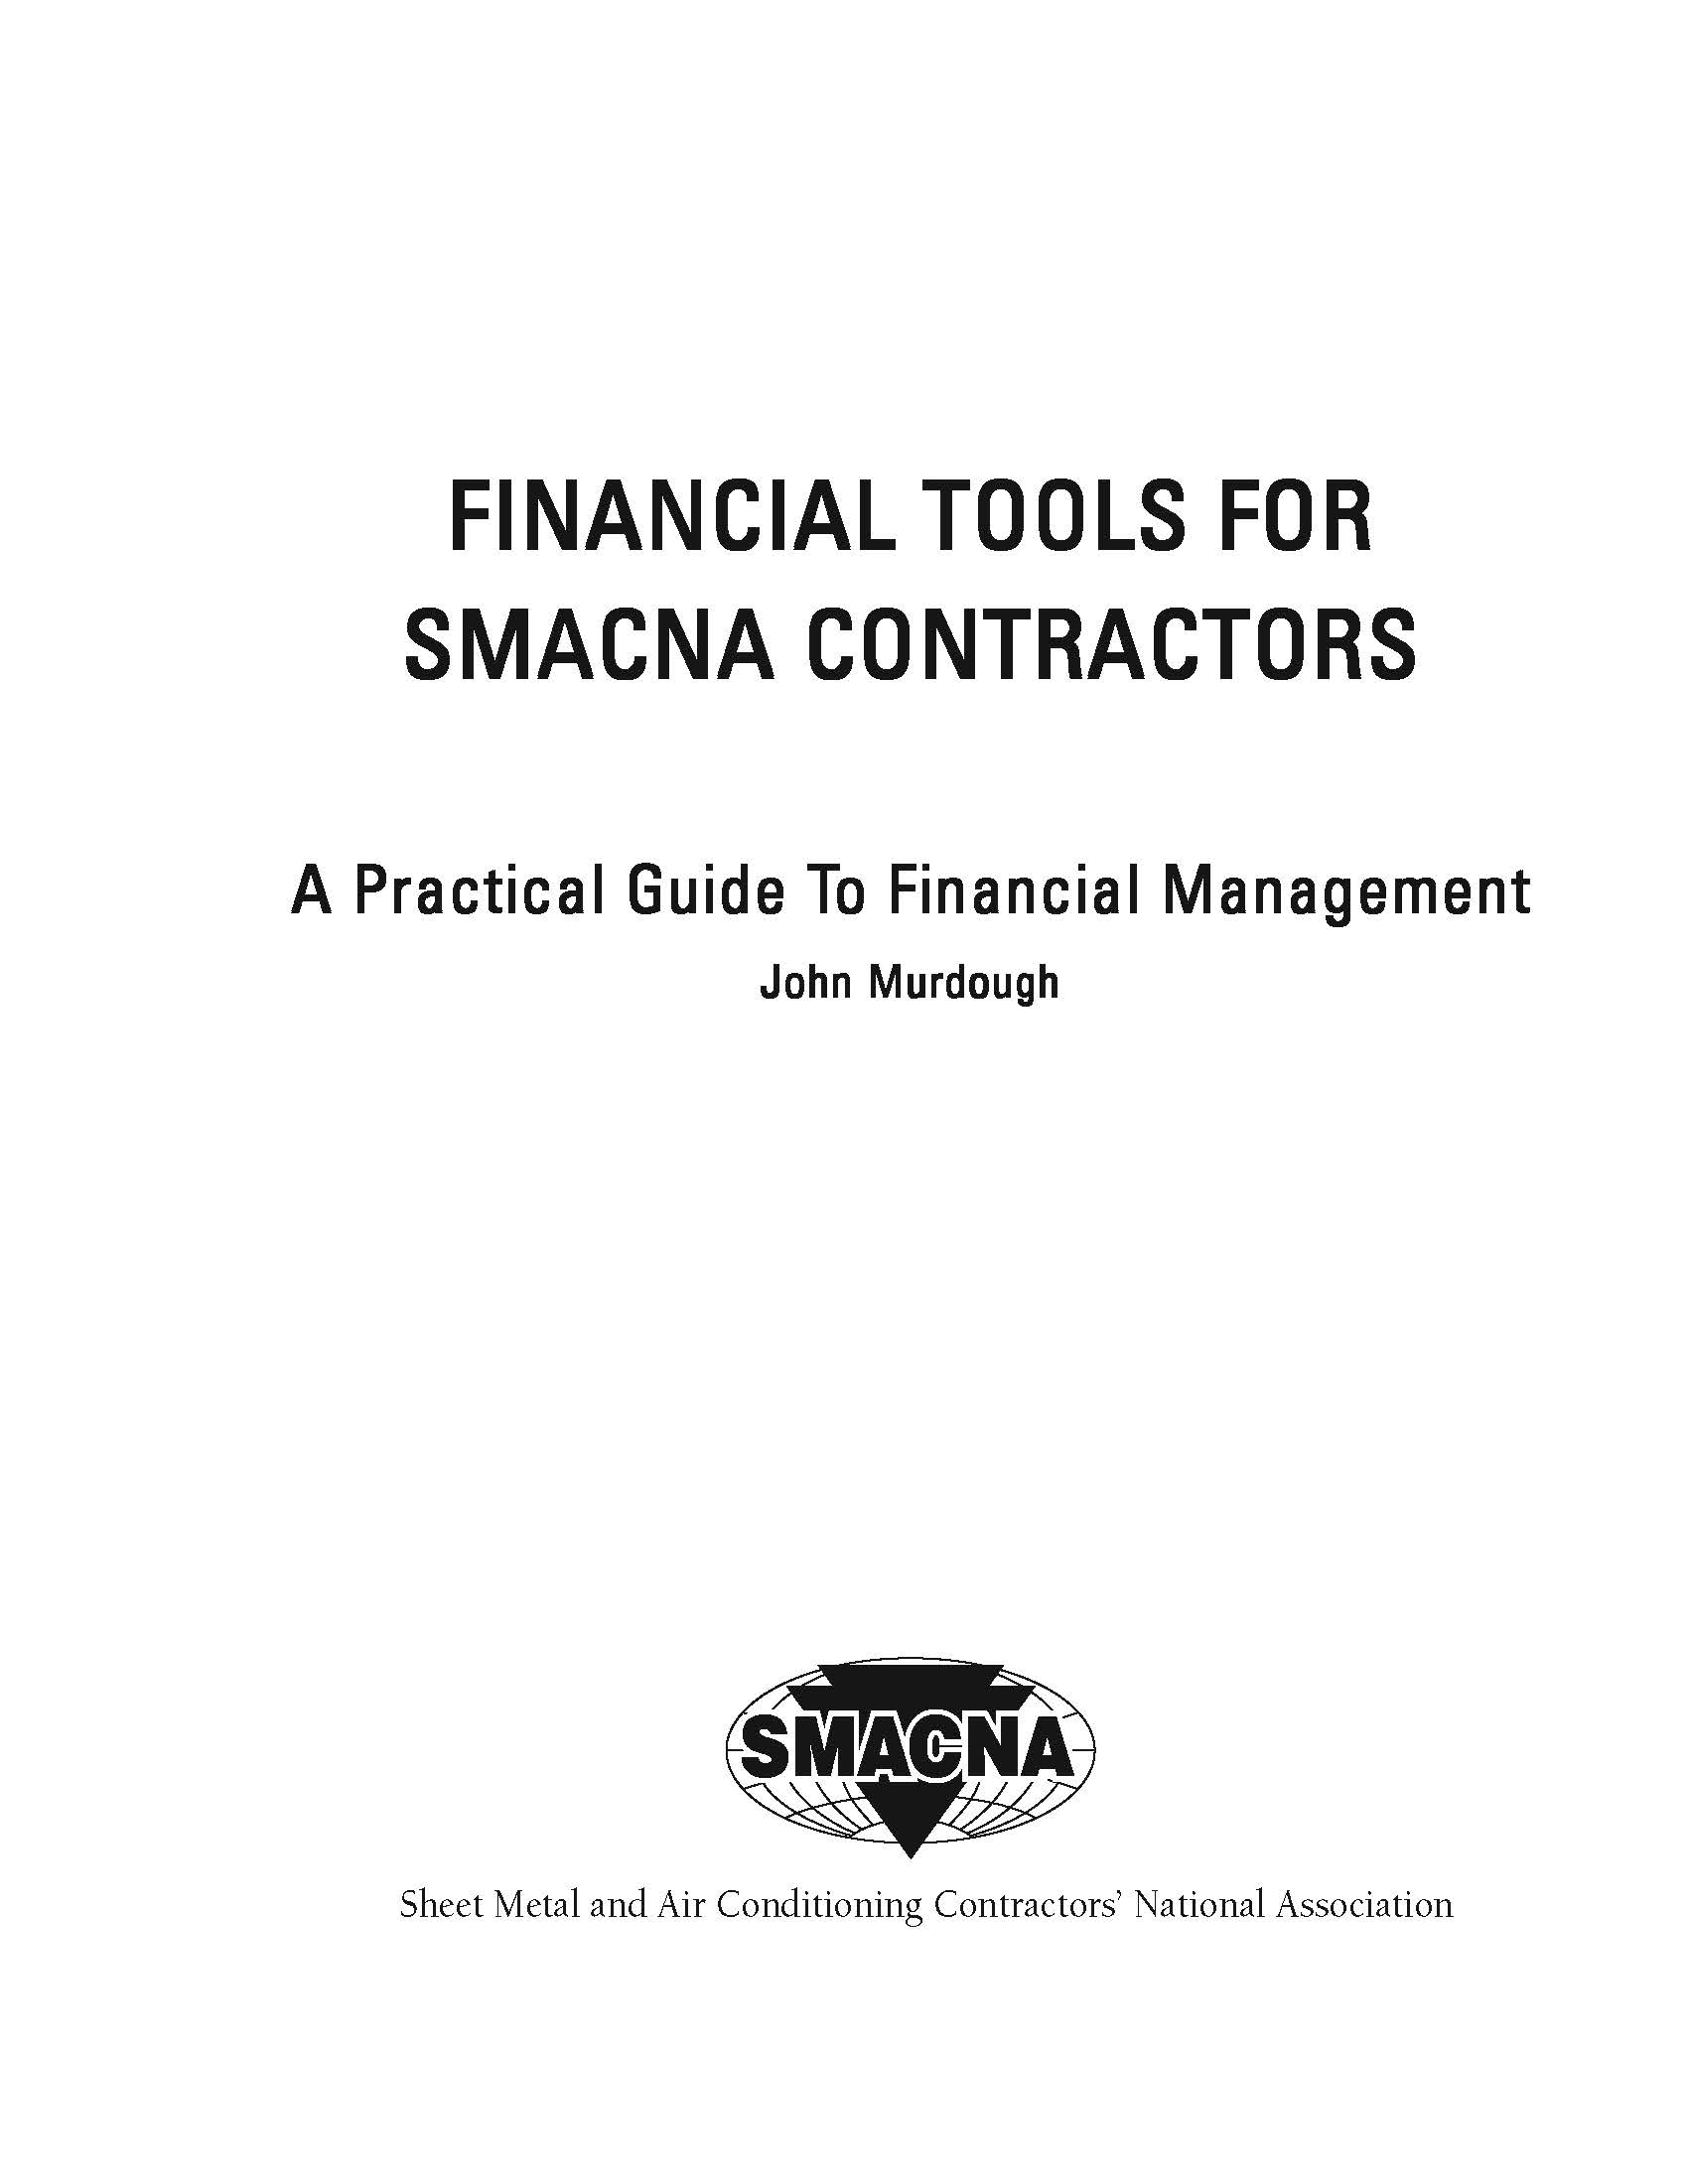 Financial Tools for SMACNA Contractors